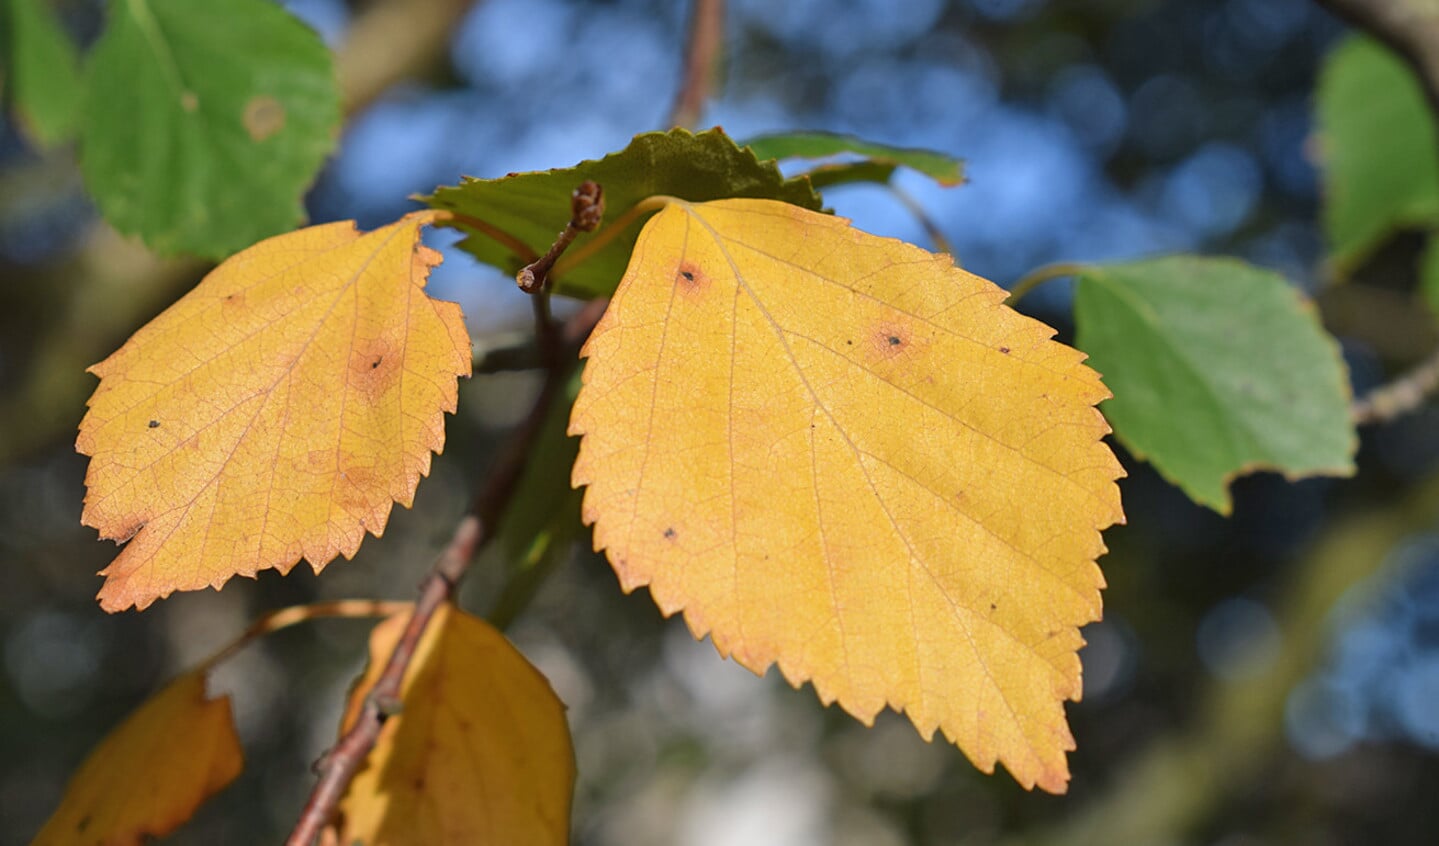 De berk is een van de eerste bomen die in de herfst voor goudgele blaadjes zorgen.